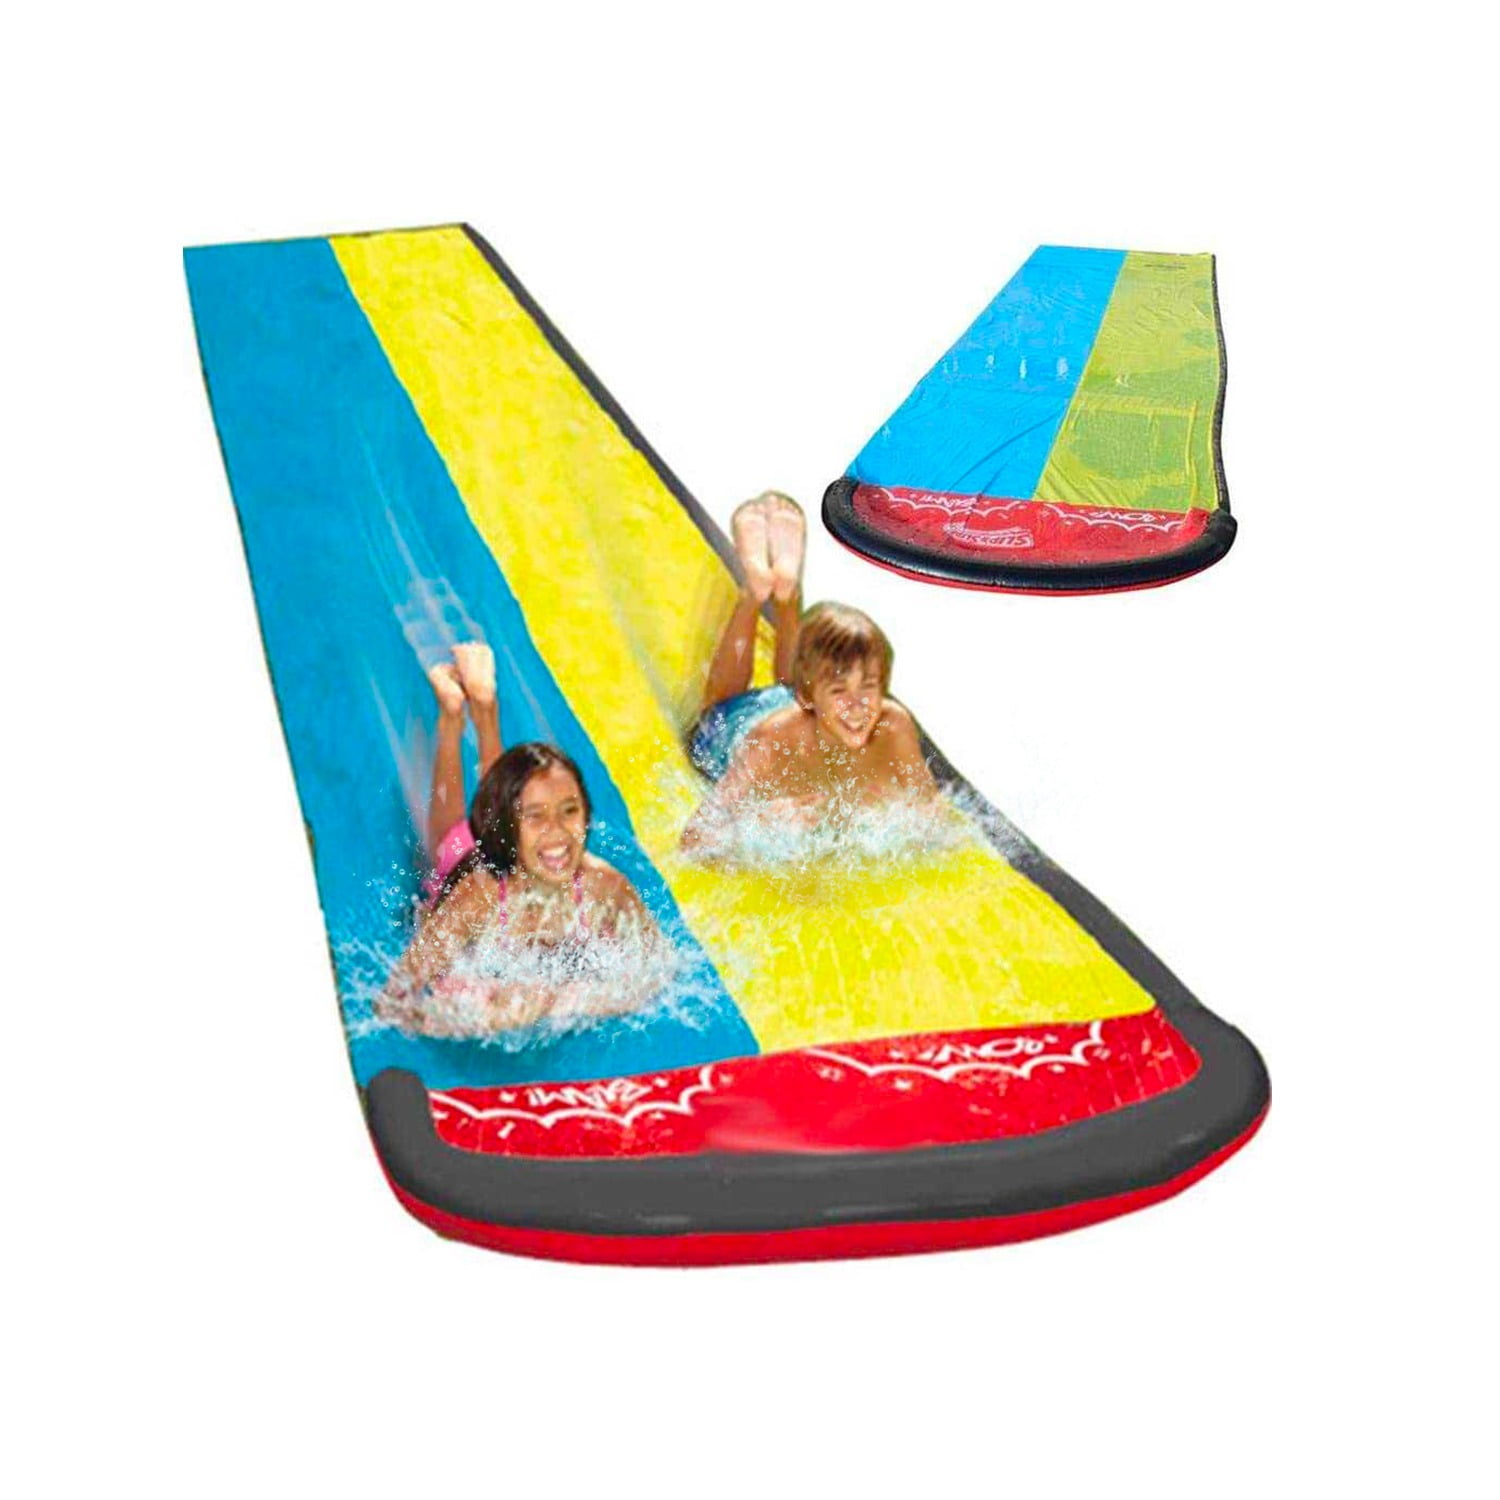 Backyard Double Water Slide Summer Fun Toy, Long Water Slip & Slide ...